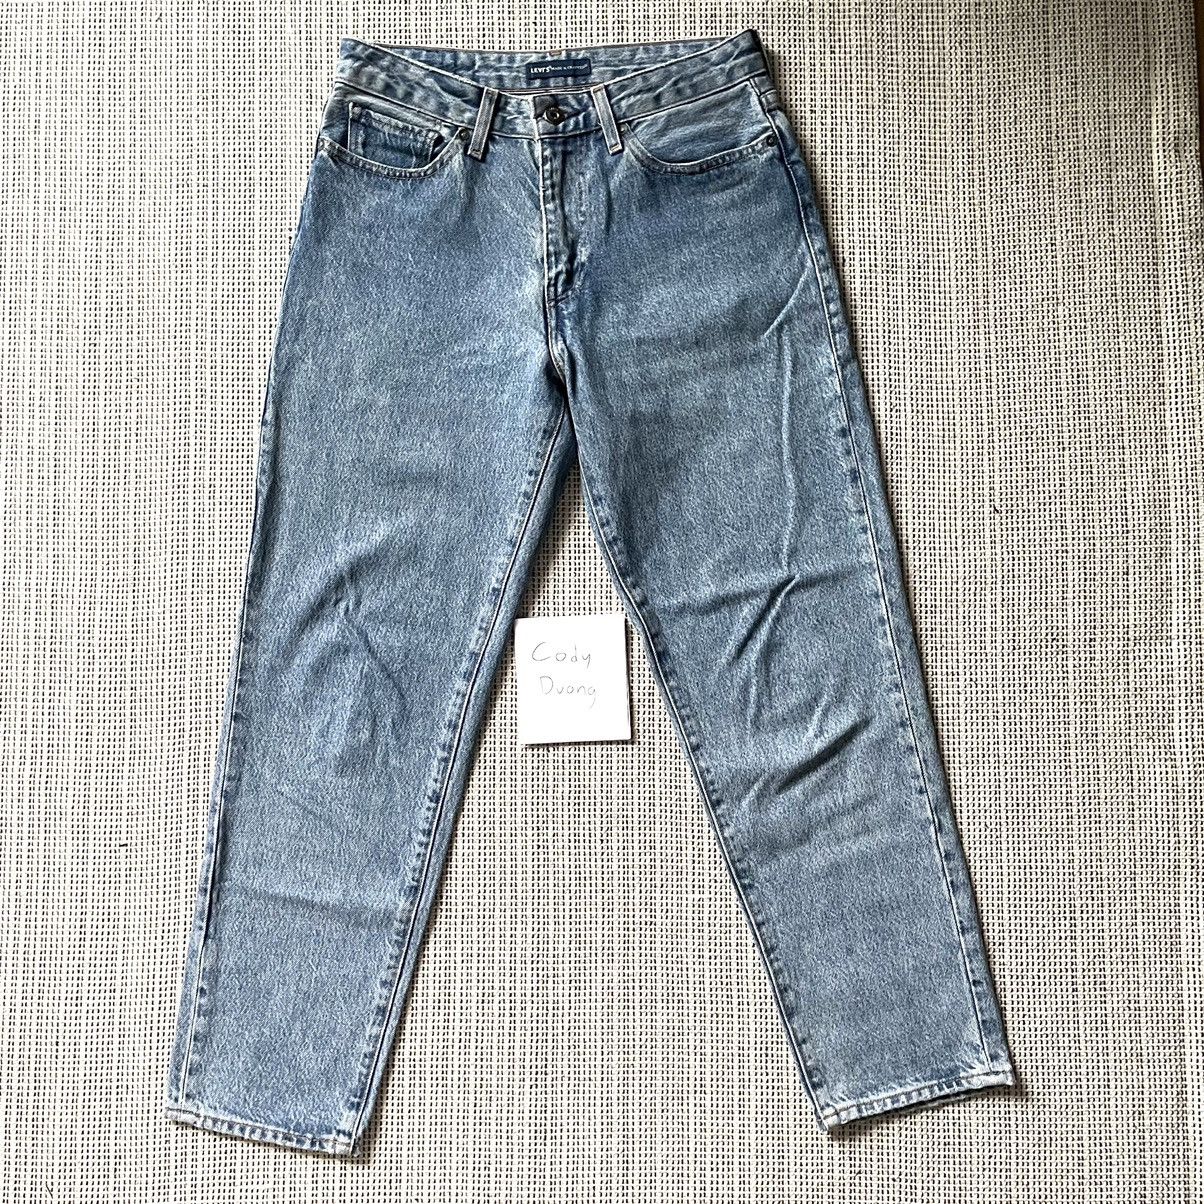 Levi's Draft wide taper vintage jeans denim blue | Grailed